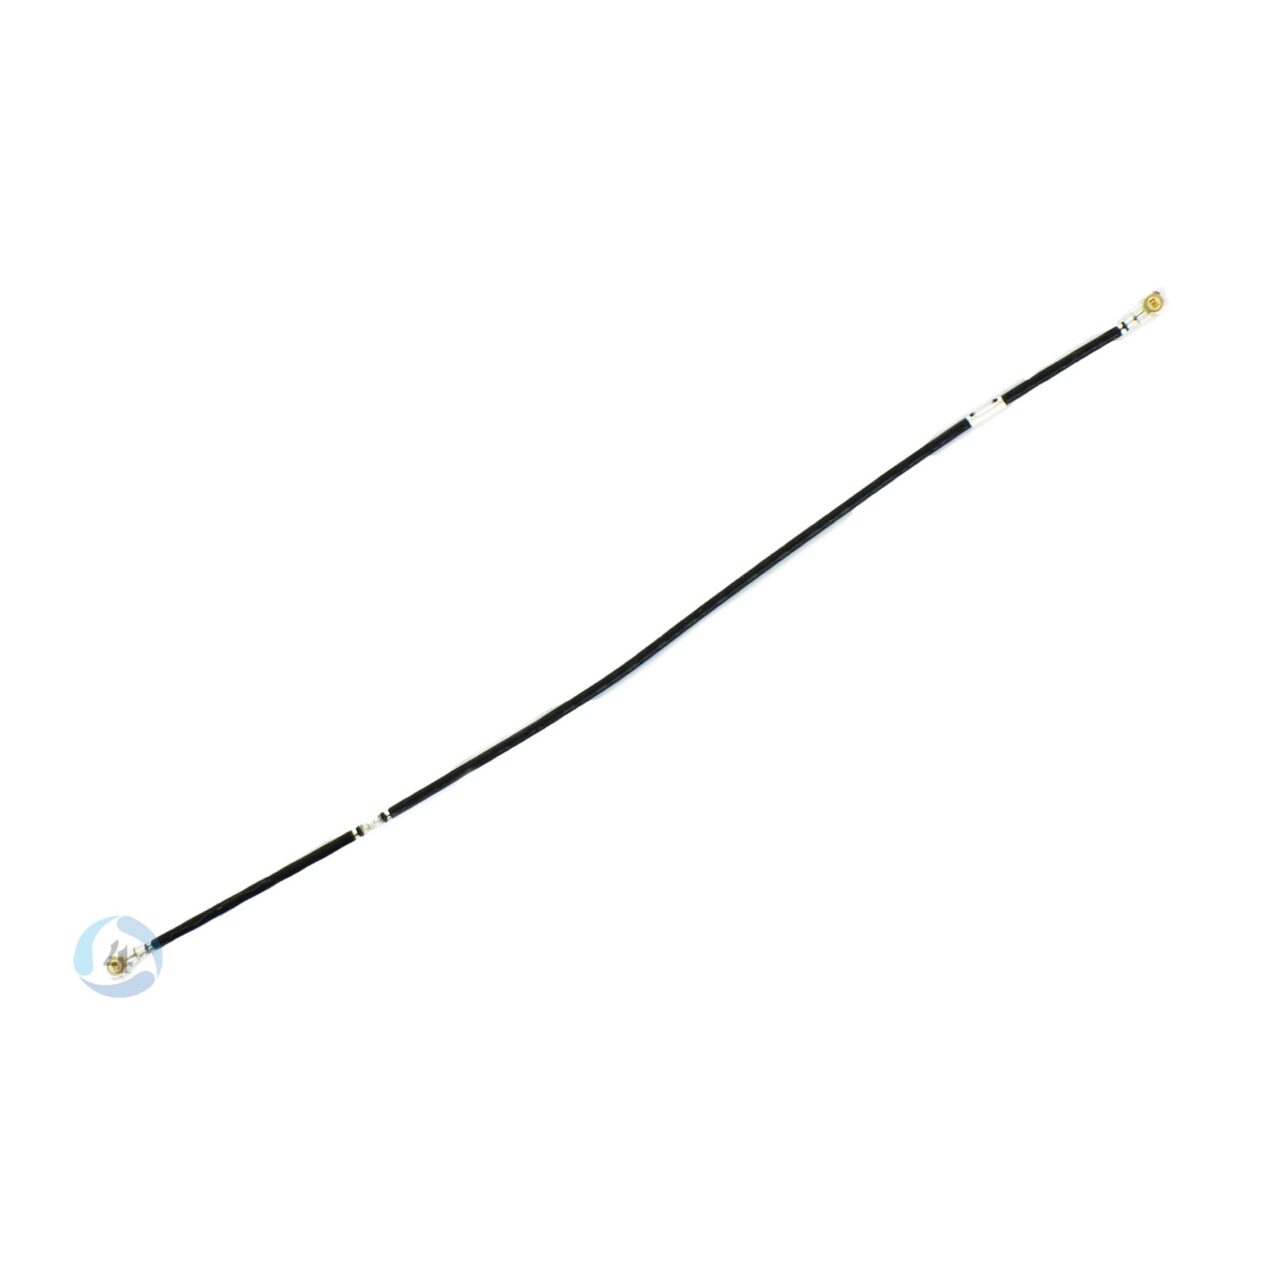 Lumia 625 antenna cable